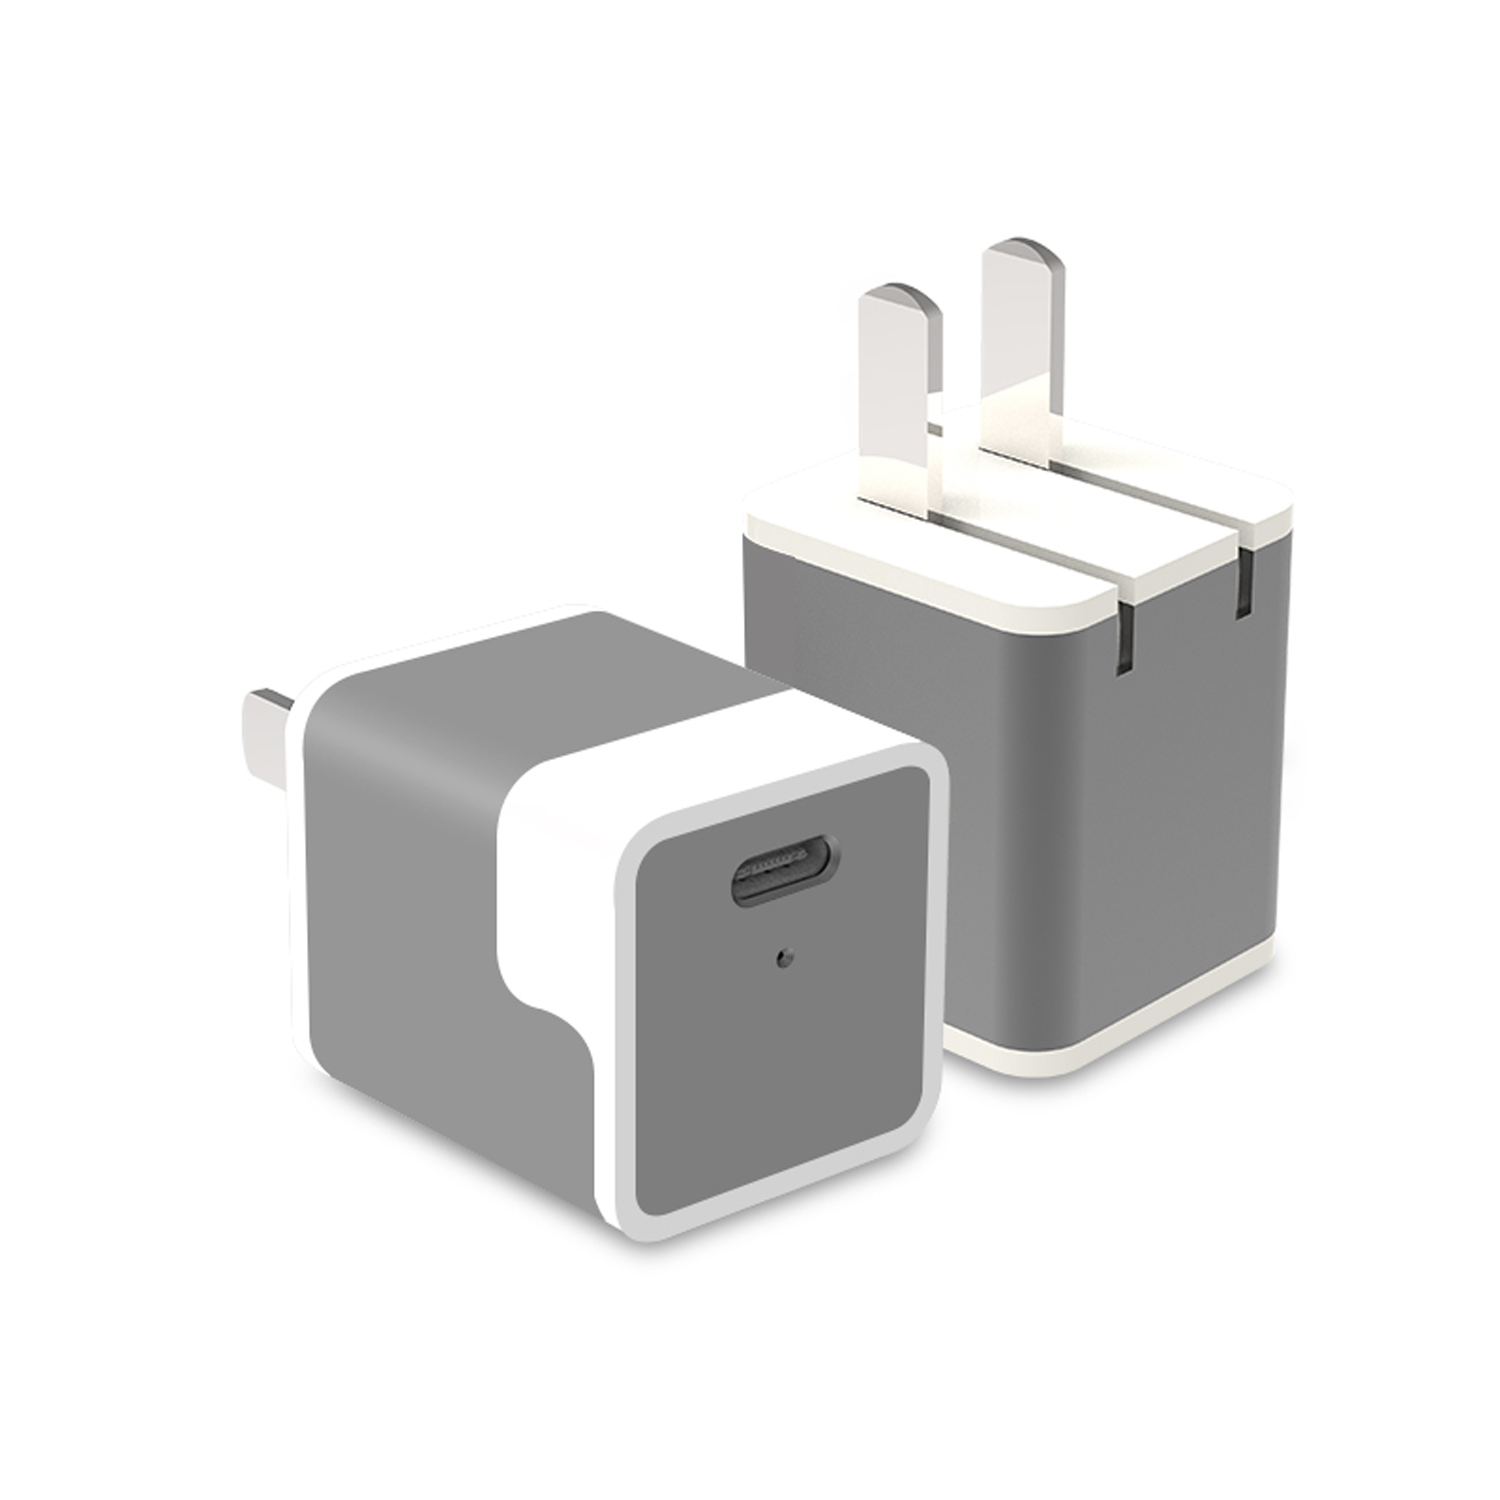 adaptador de corriente portátil de carga rápida de 20w para iphone Imagen destacada